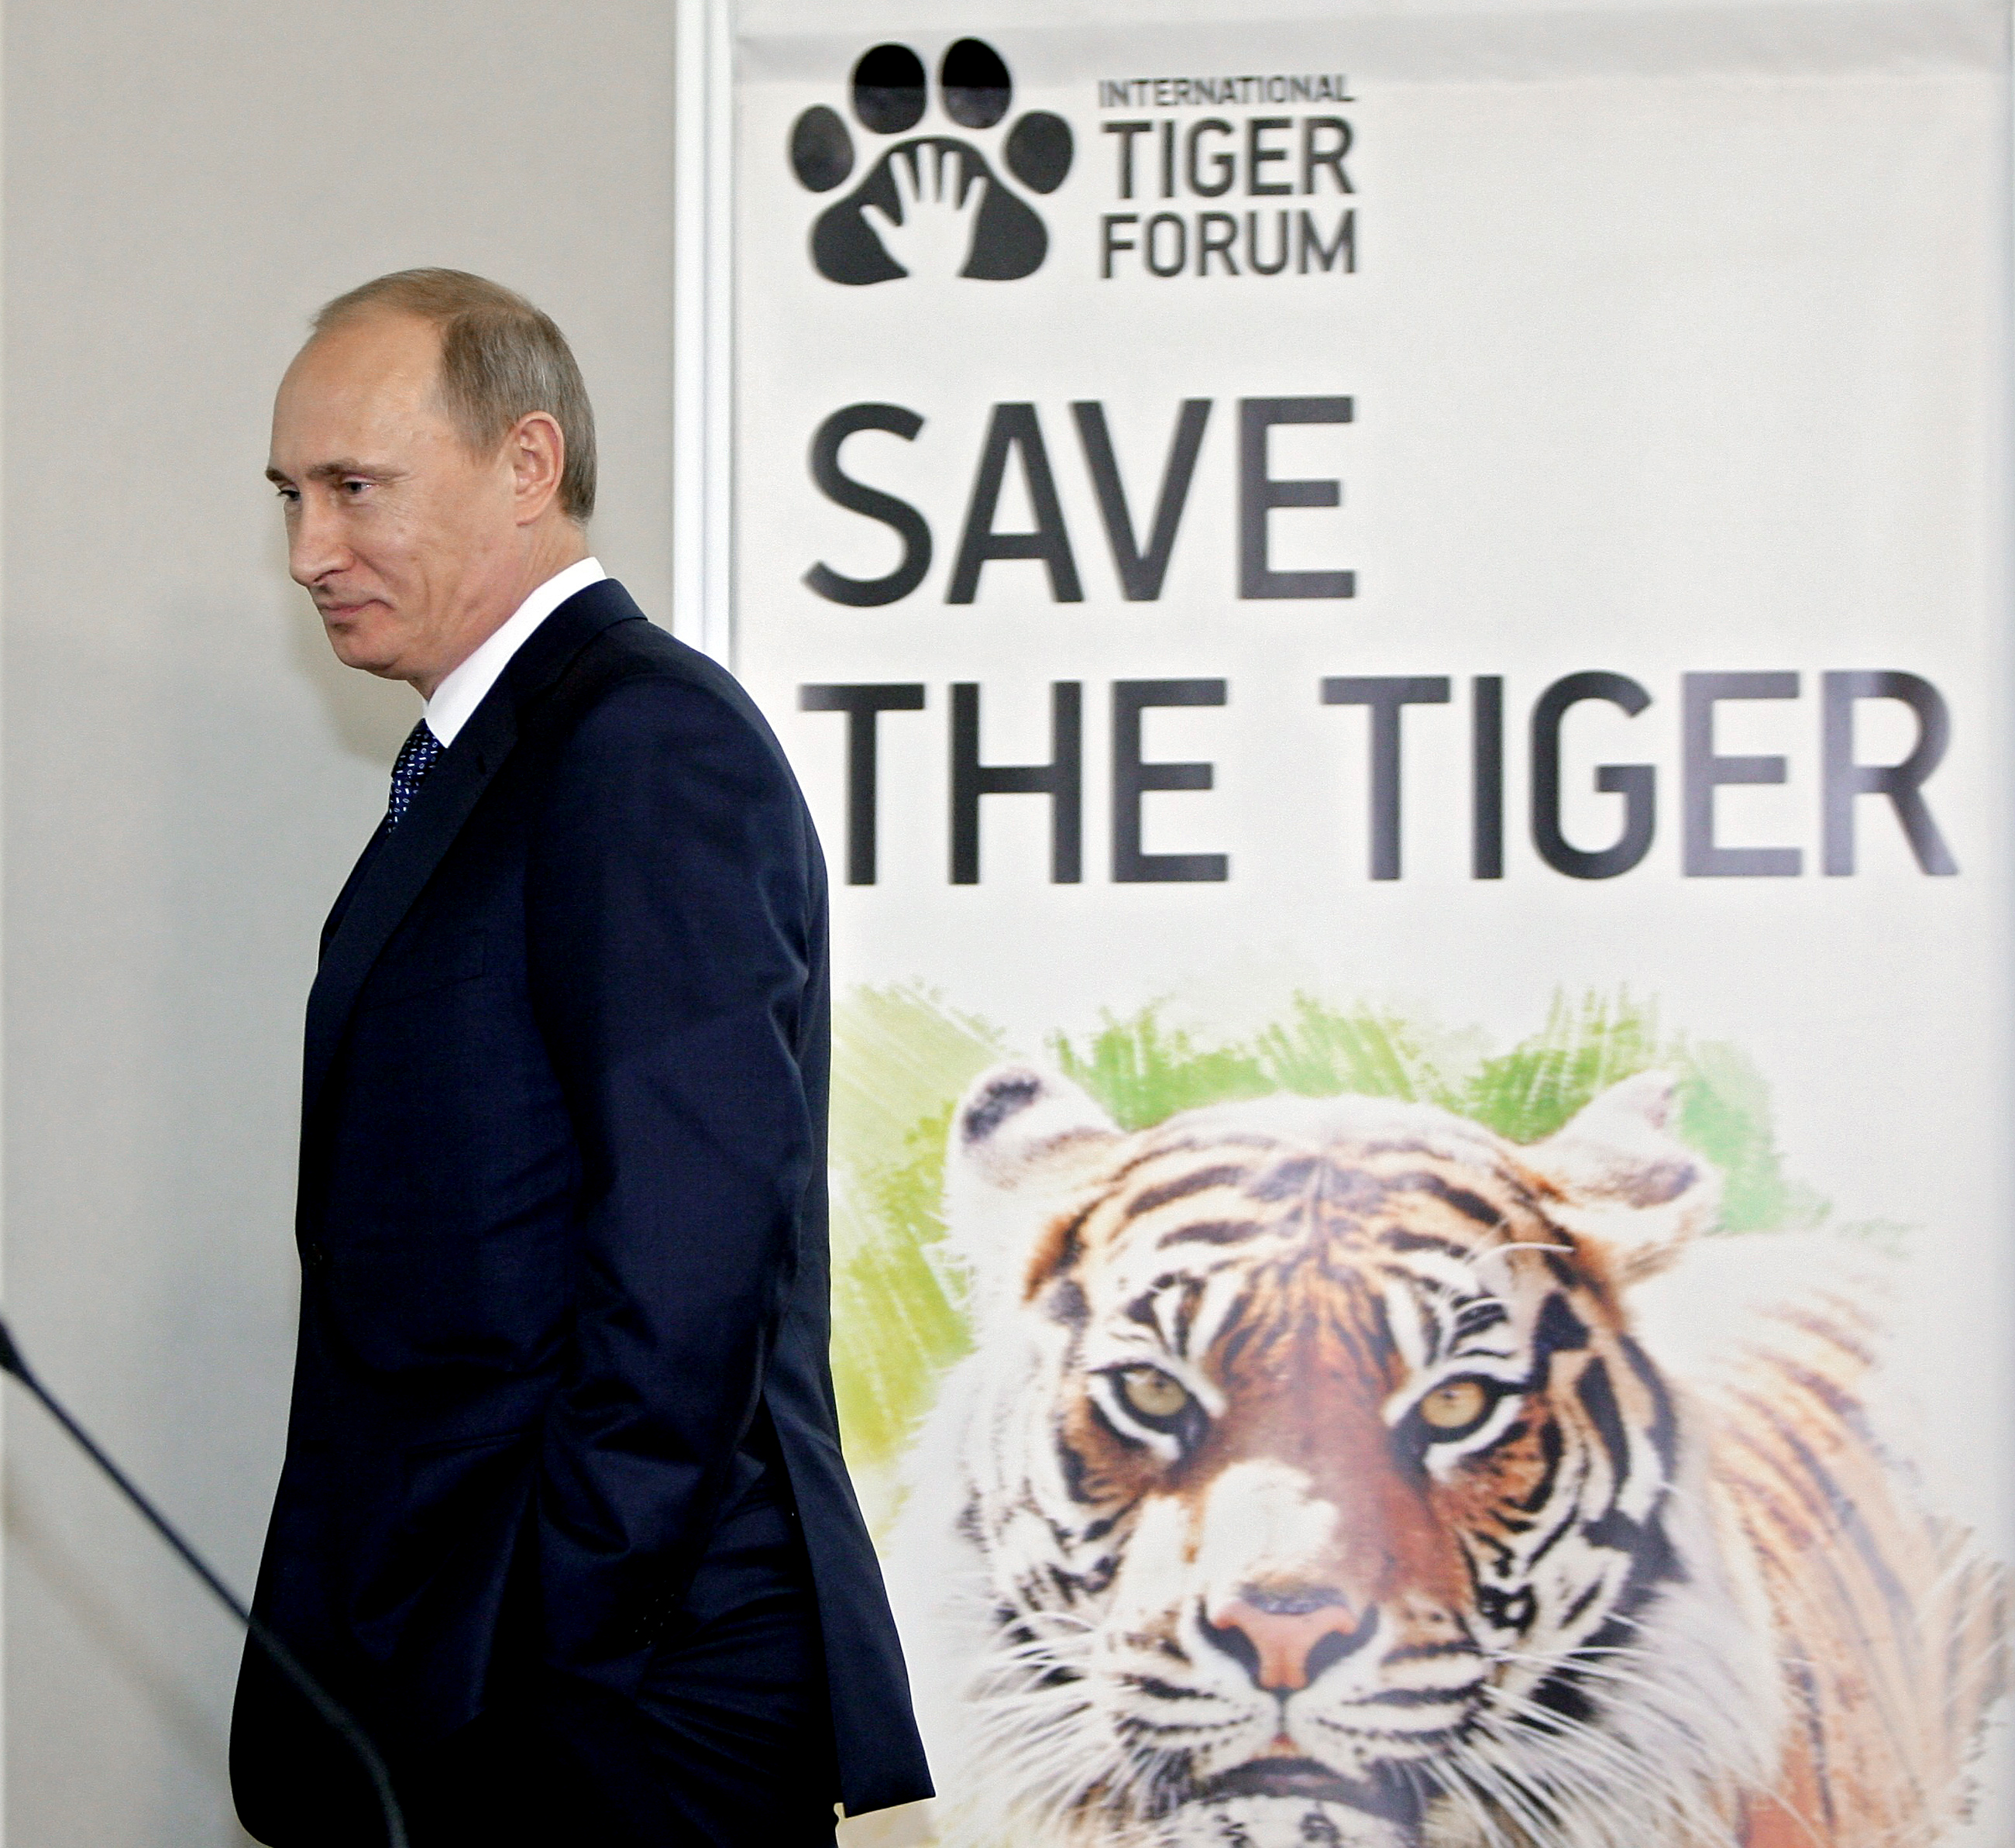 Vladimir Putin at the International Tiger Conservation Forum, November 23, 2010.